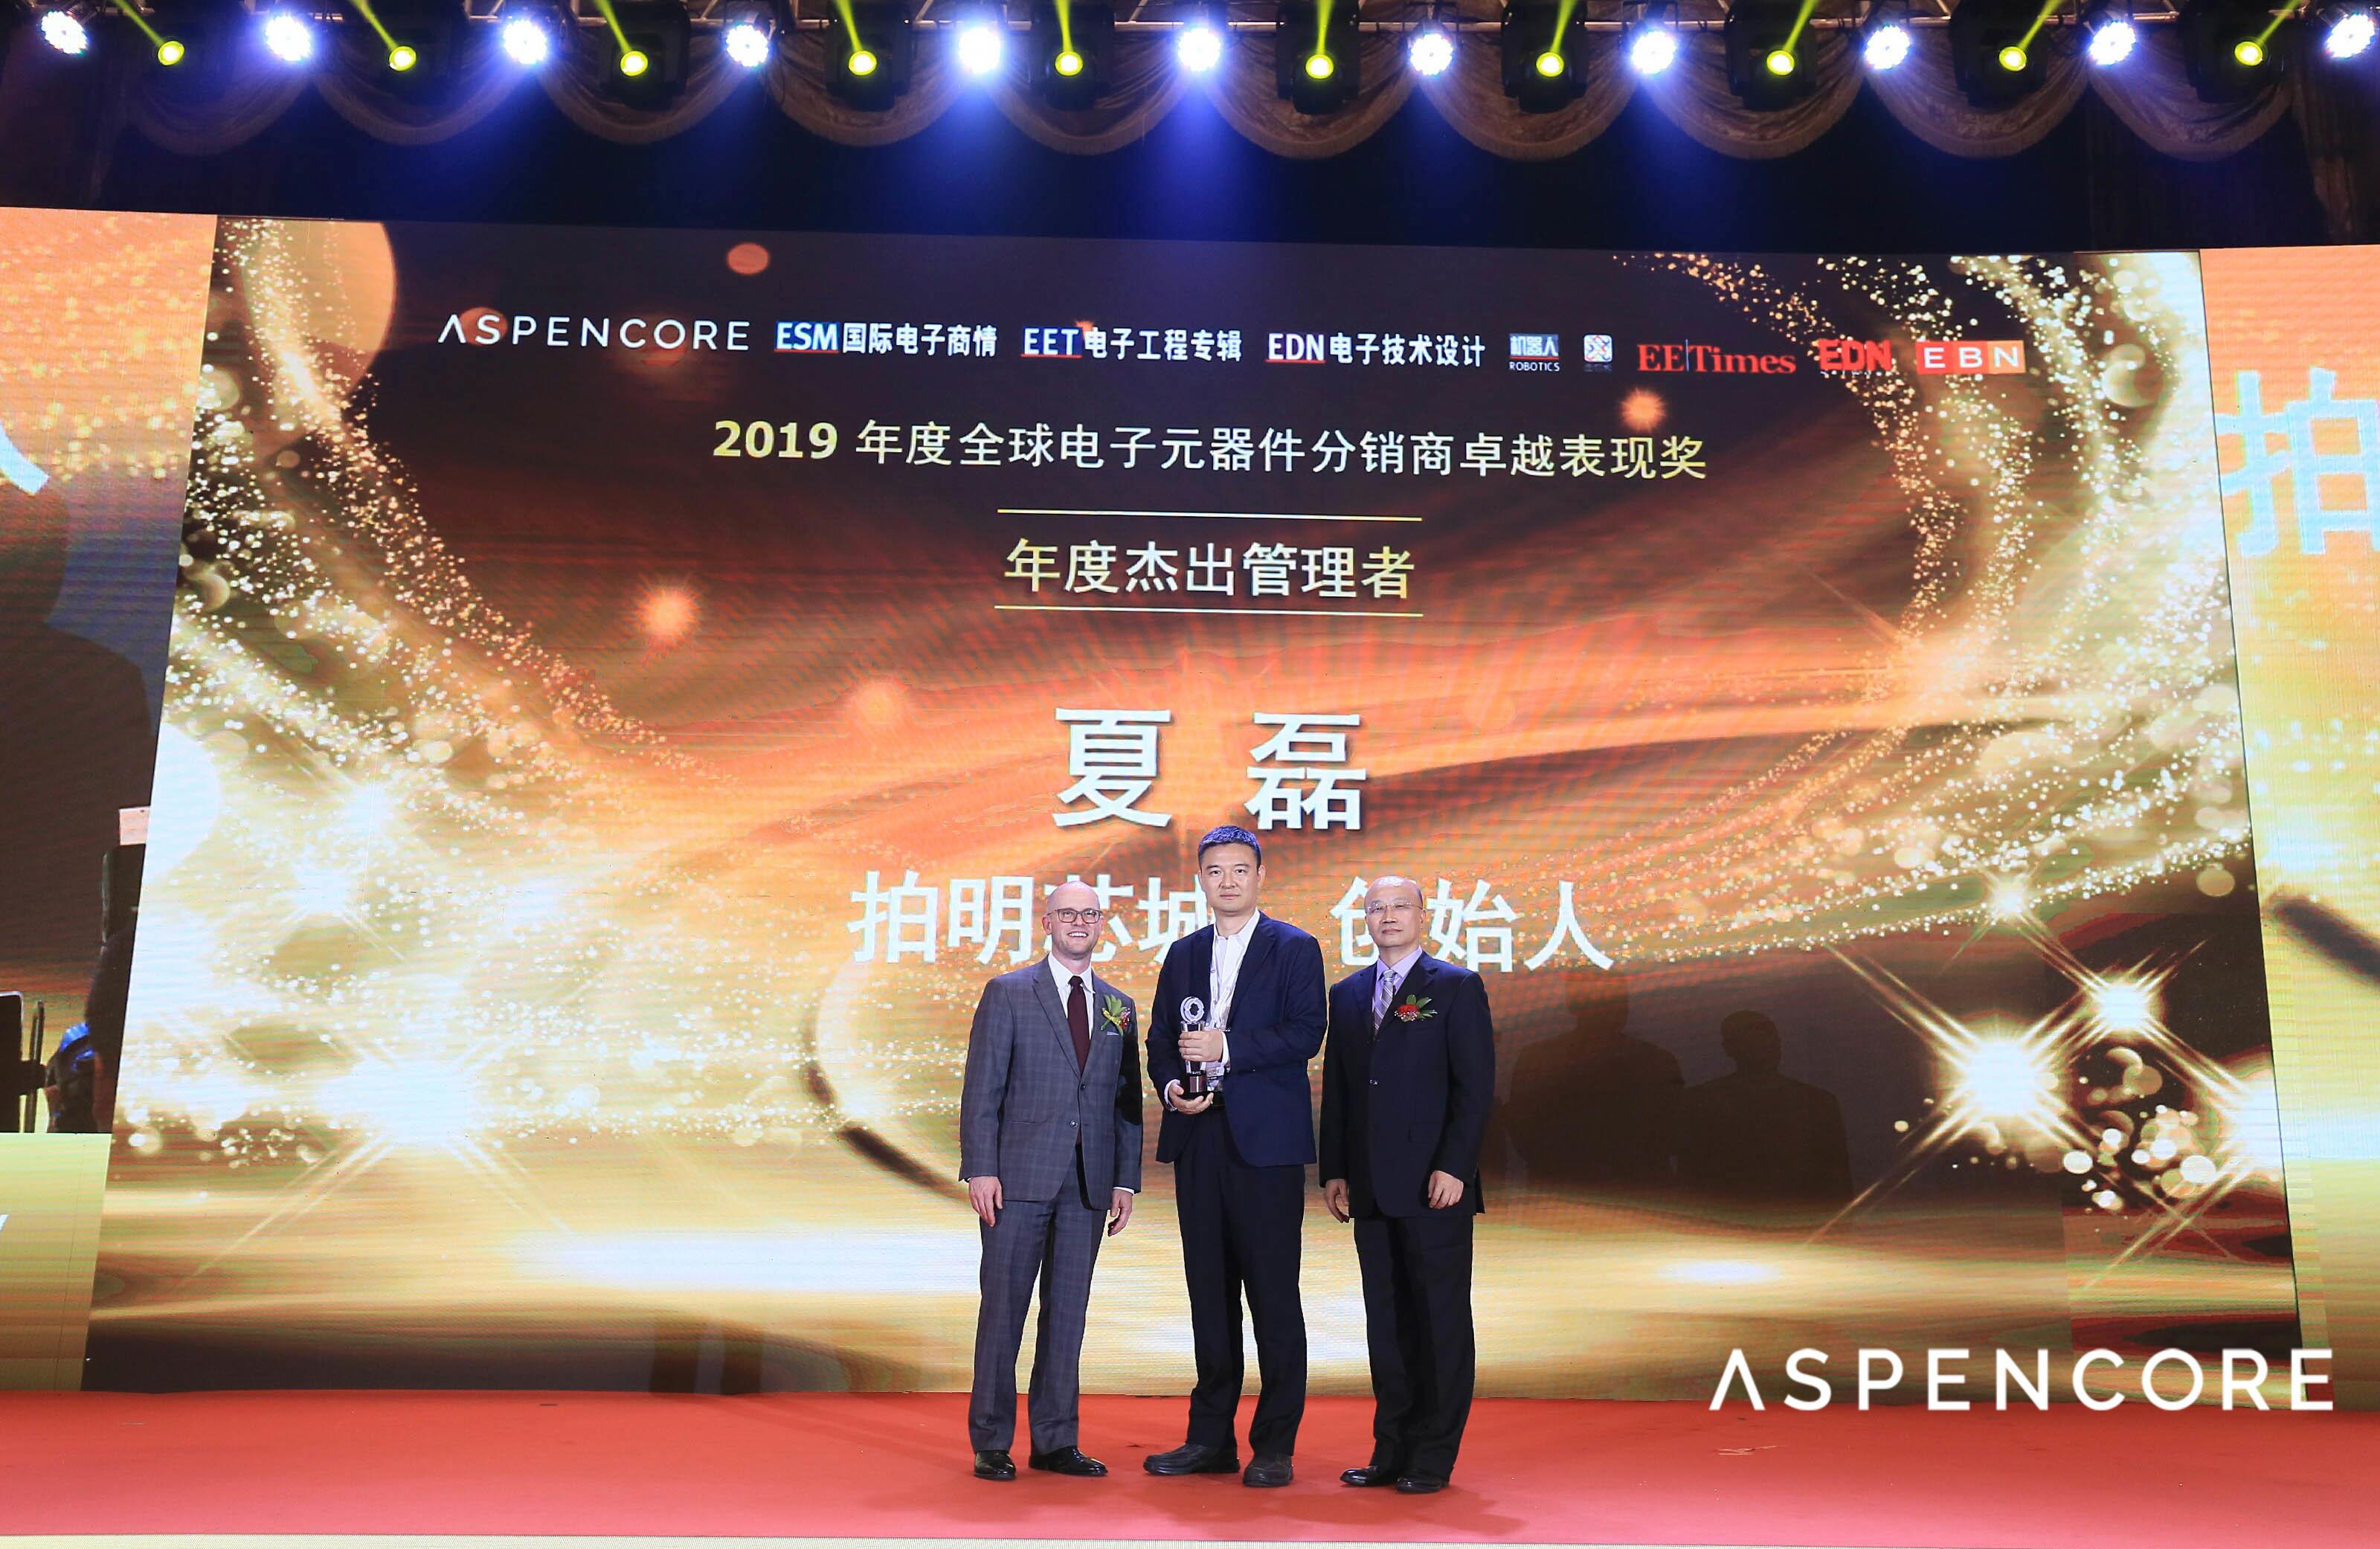 拍明芯城创始人夏磊先生荣膺2019年度杰出管理者奖